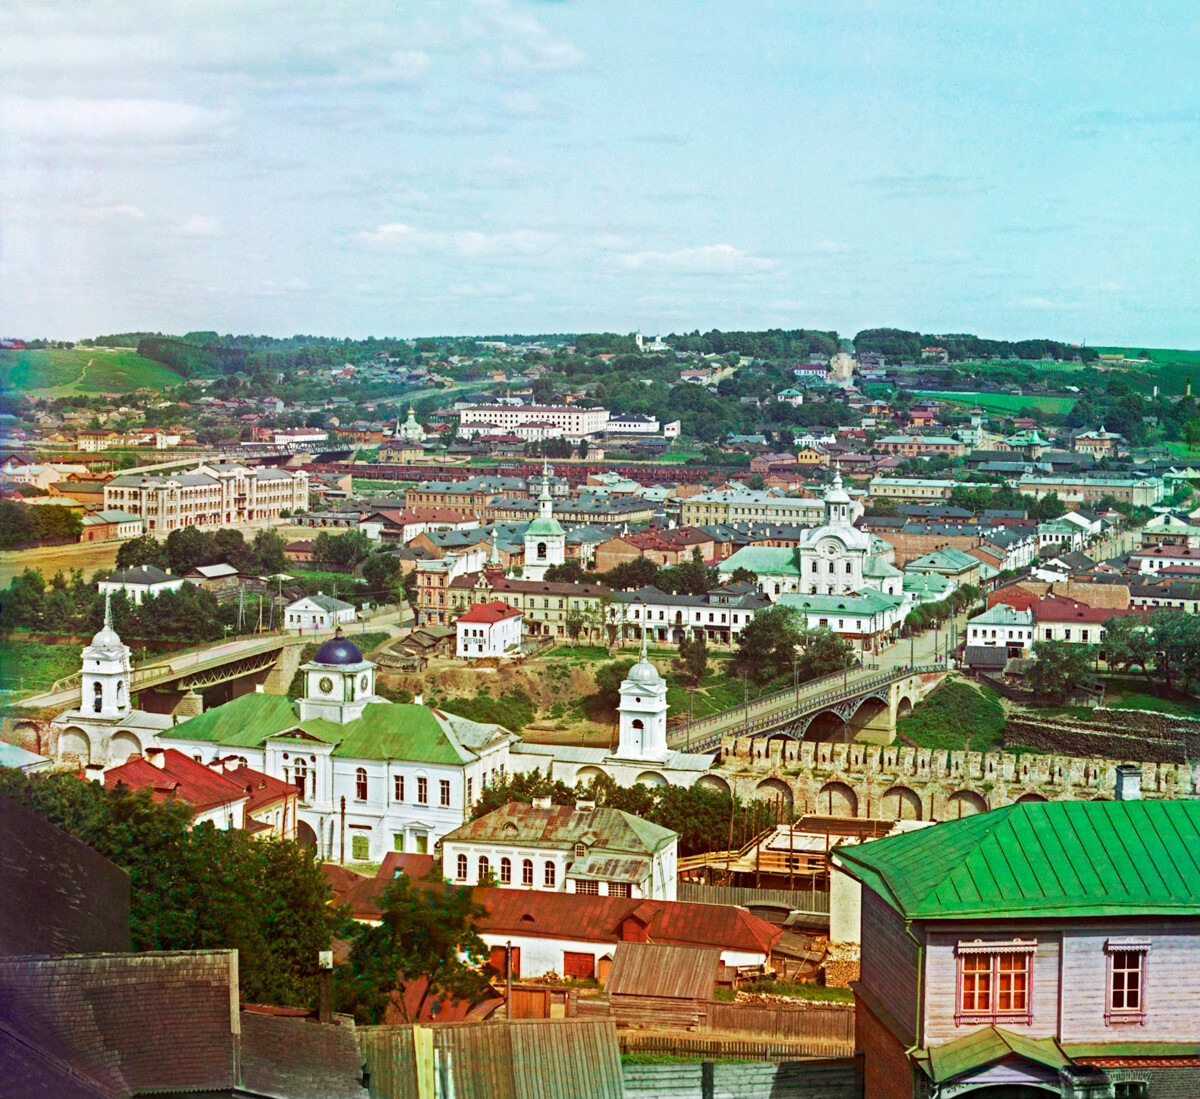 Pogled na Smolensk s katedralnega hriba, 1911-1912
